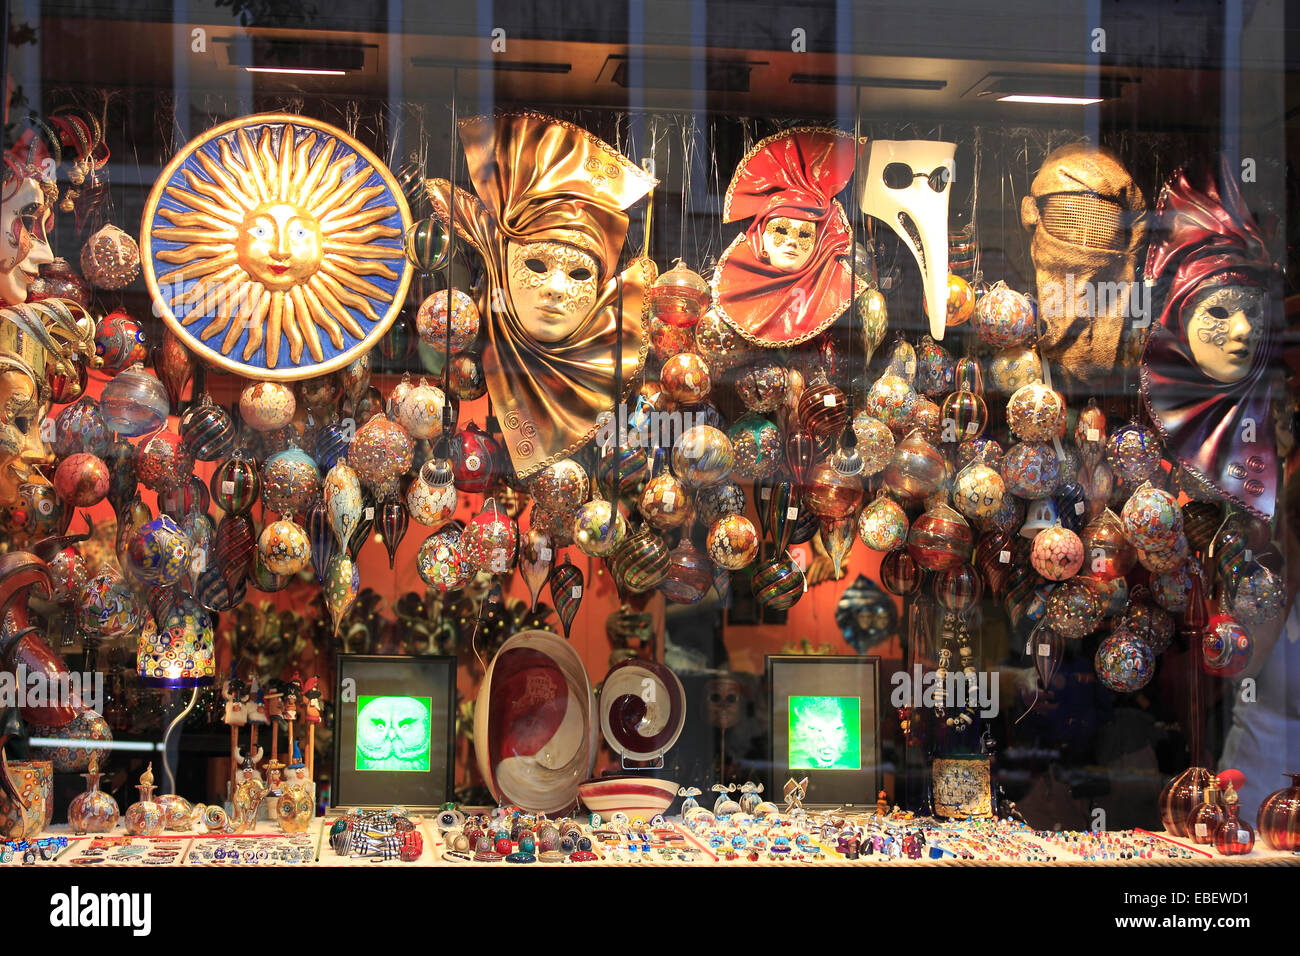 Italie Venise Cannaregio fenêtre boutique de souvenirs Banque D'Images